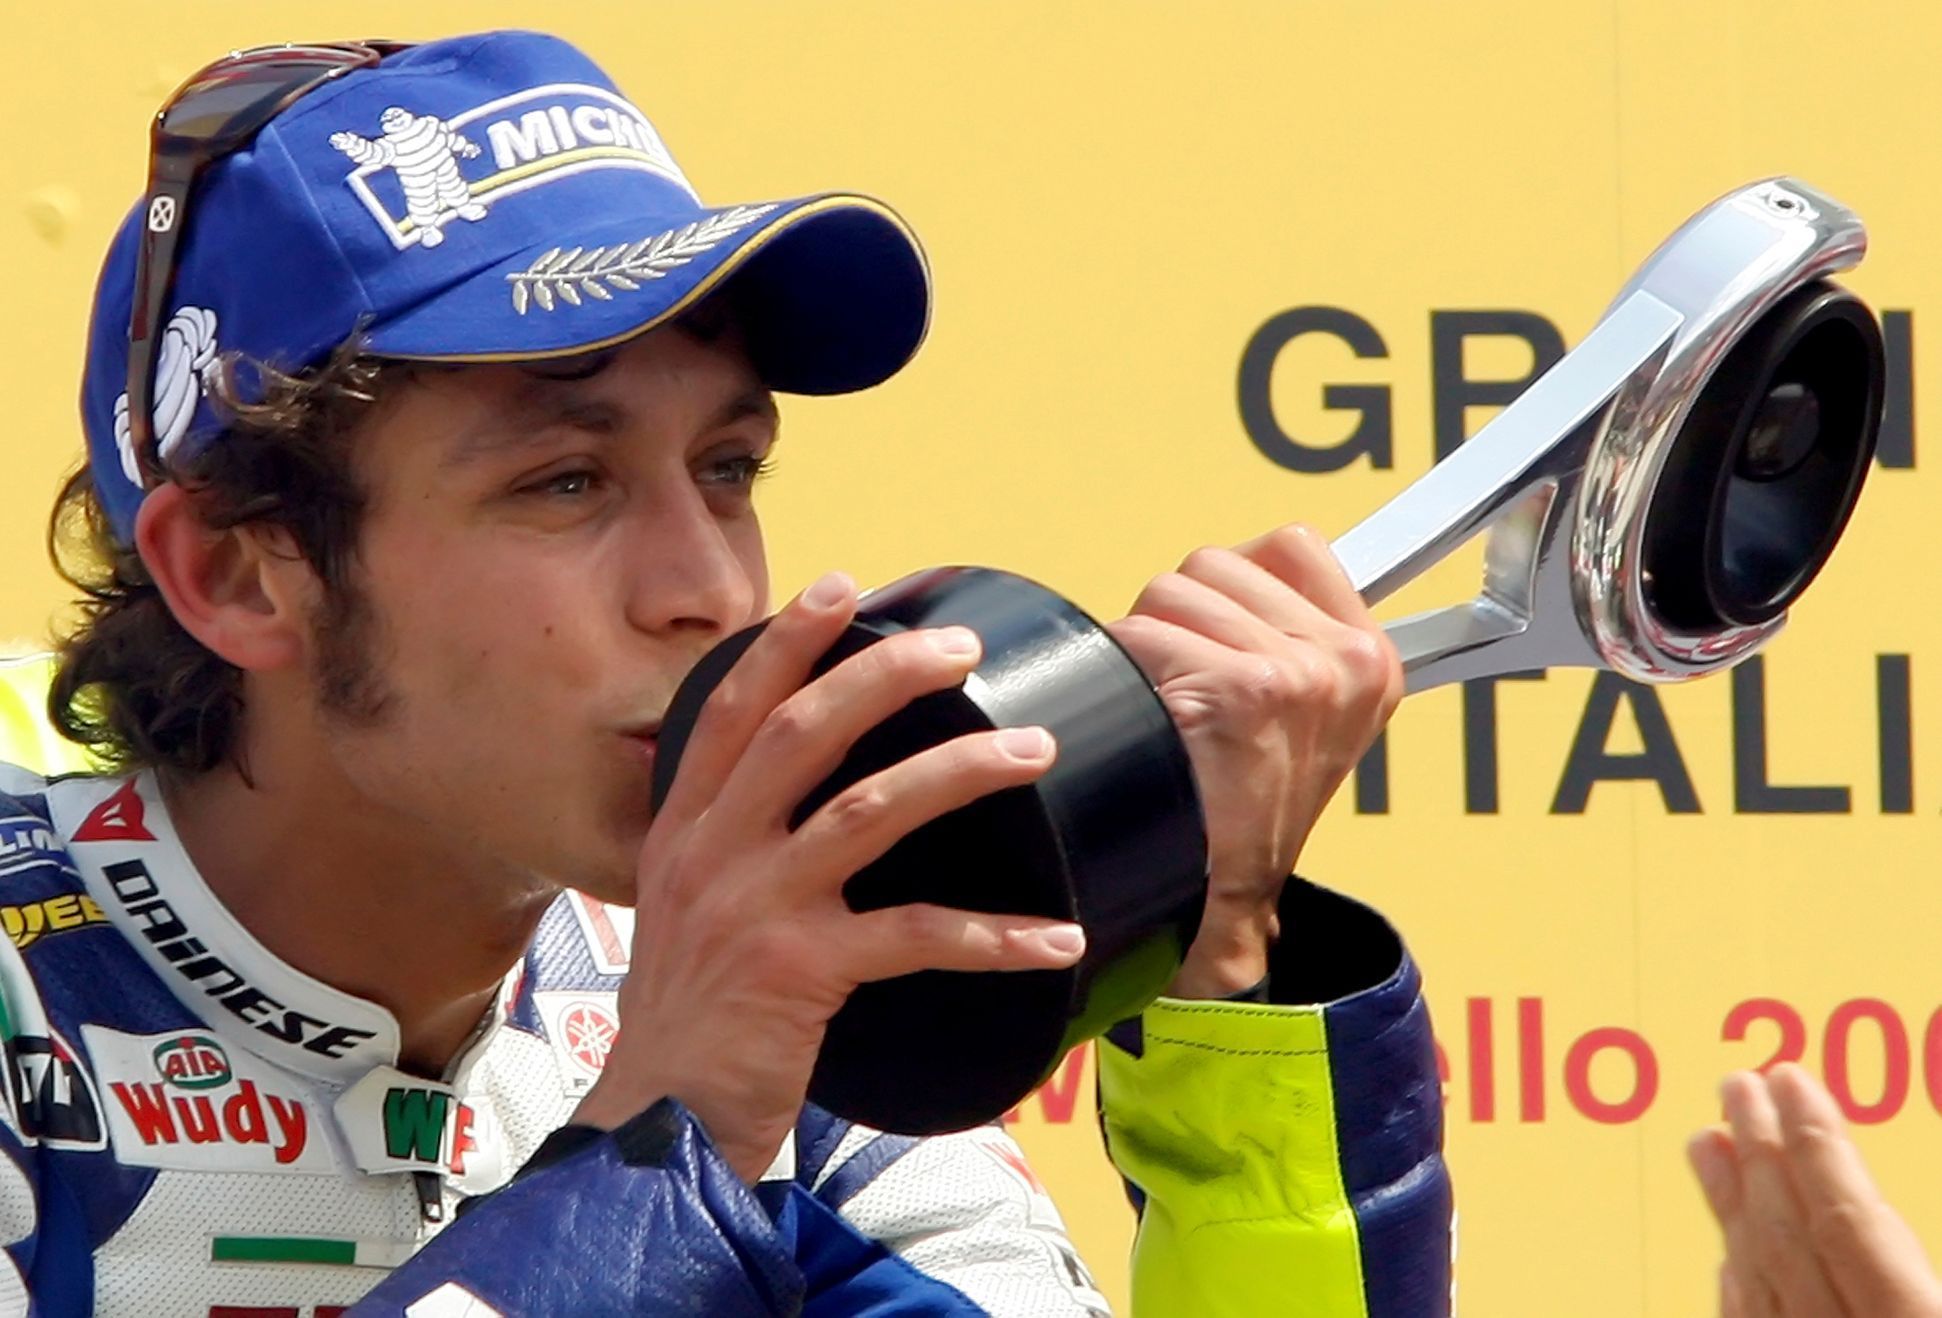 Valentino Rossi (Yamaha) slaví vítězství v GP Itálie MotoGP 2007